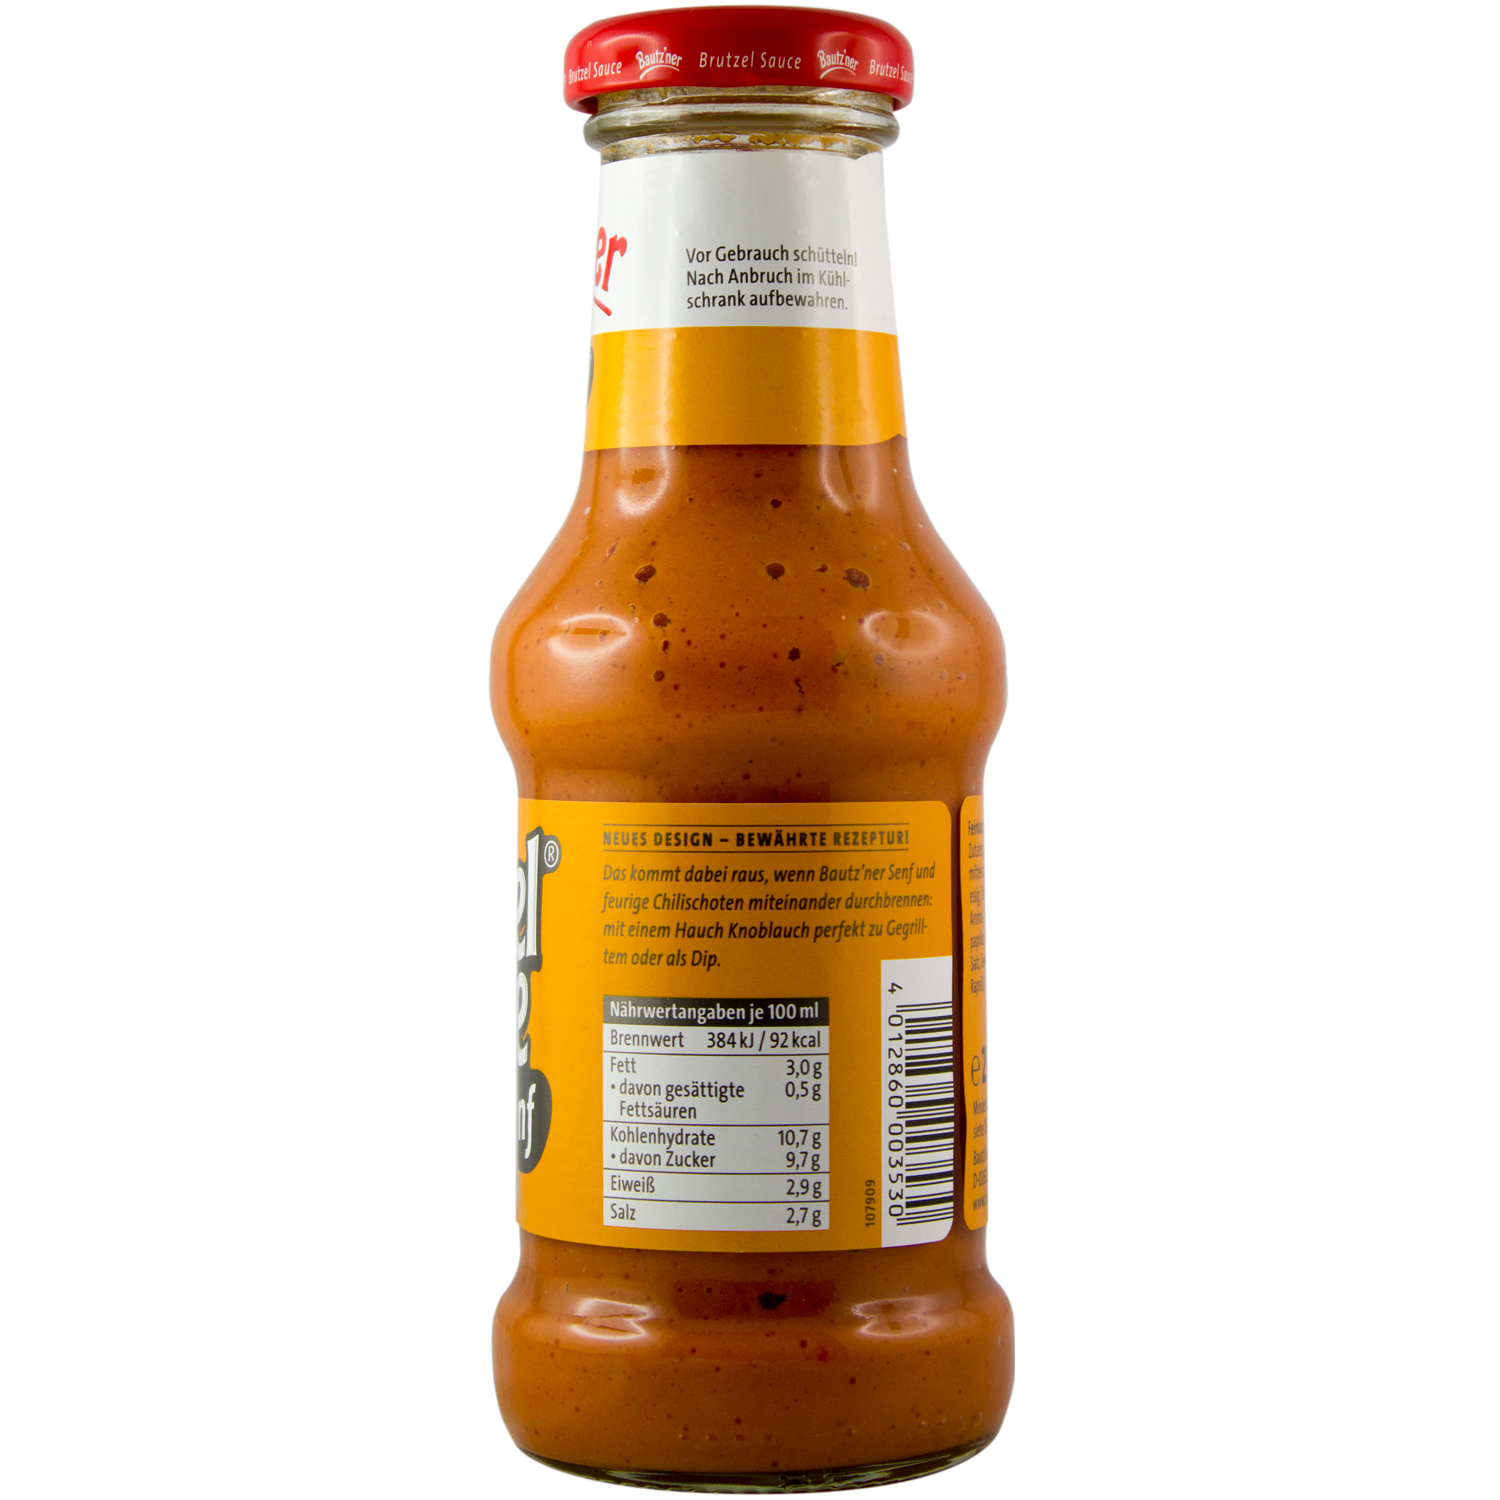 Ossikiste.de | Bautzner Brutzel Sauce Chili-Senf 250ml | online kaufen